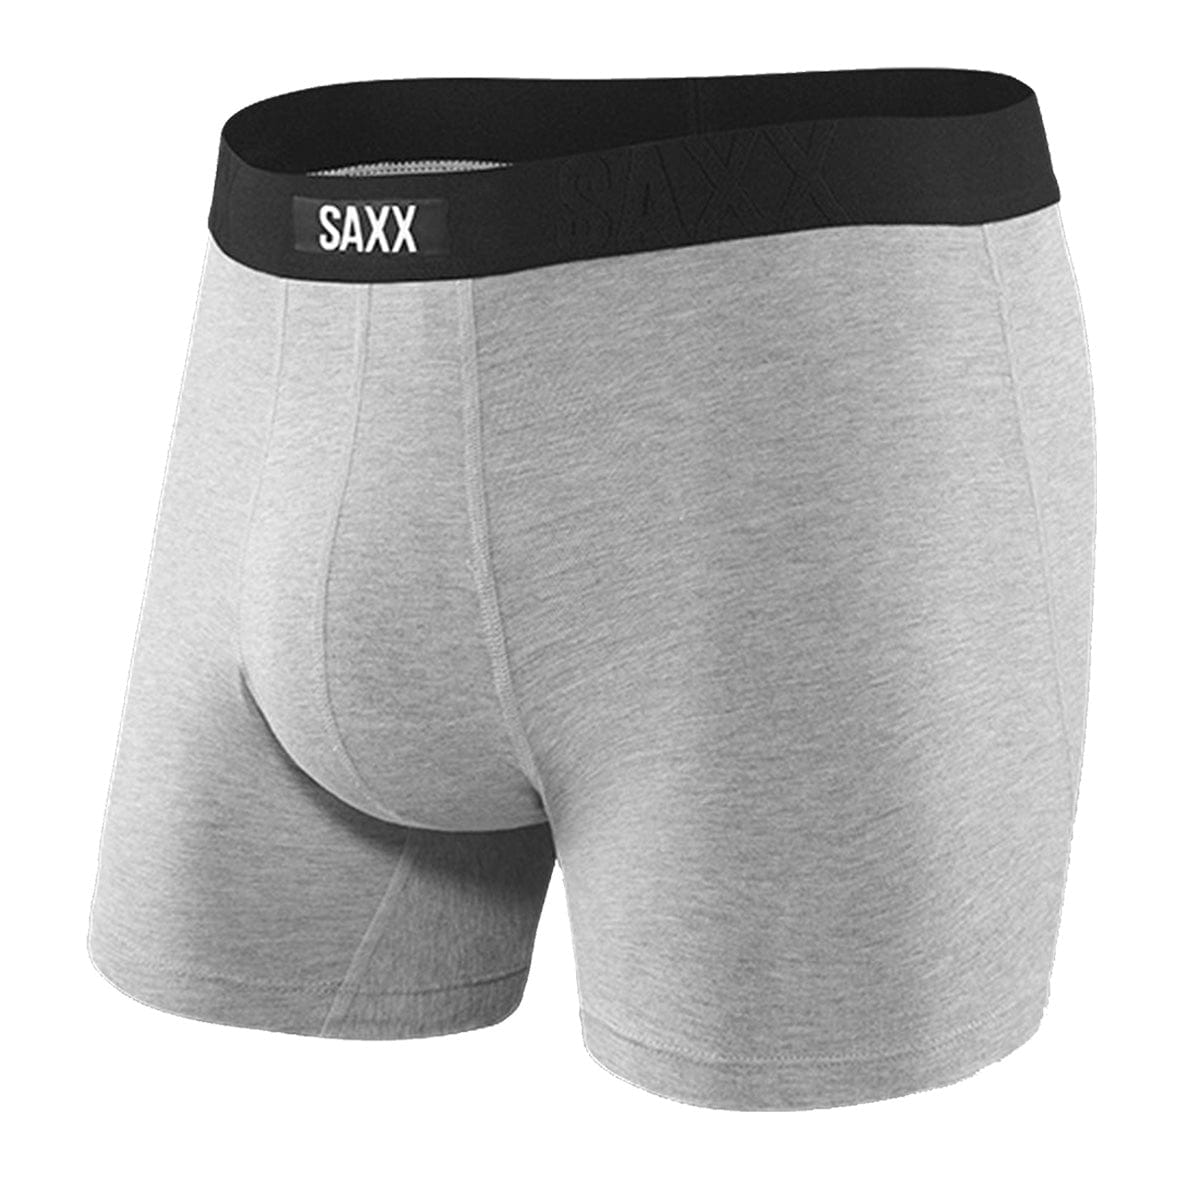 Saxx Vibe Boxers - Freehand Stripe - Grey